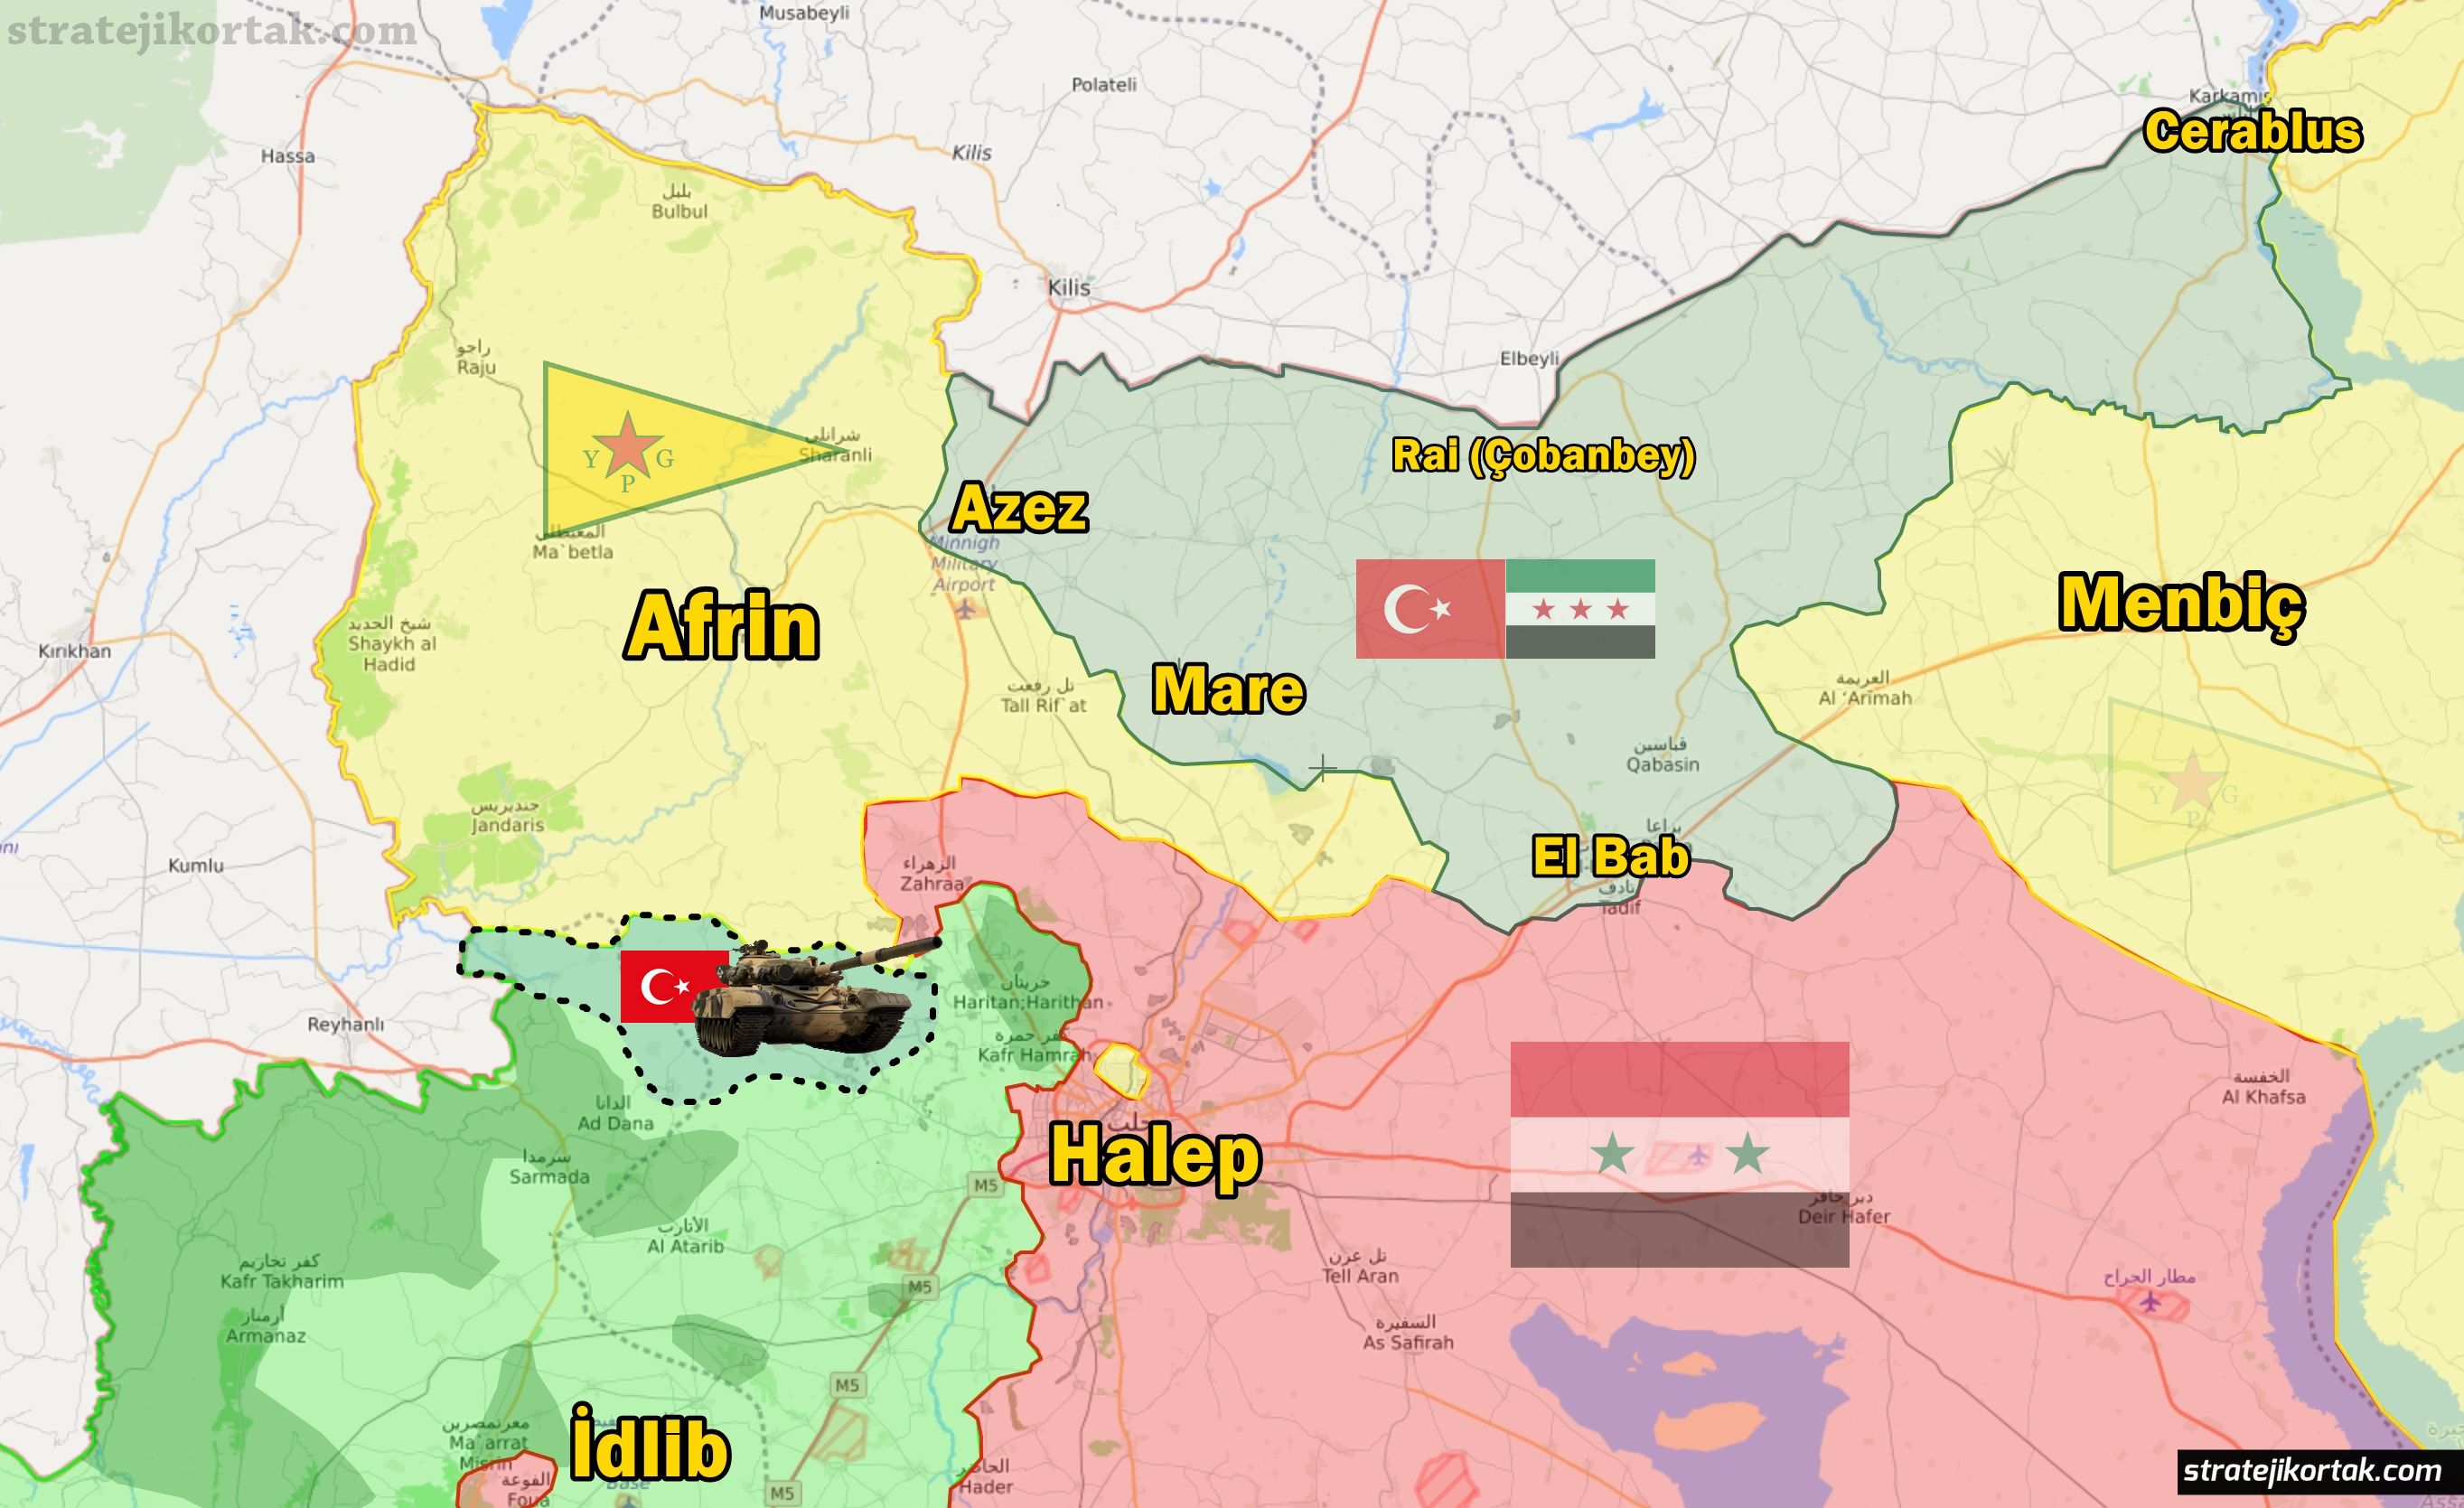 Stratejik Ortak sitesinde yayınlanan 15 Ocak 2018 tarihli 'Suriye'de son durum' haritası